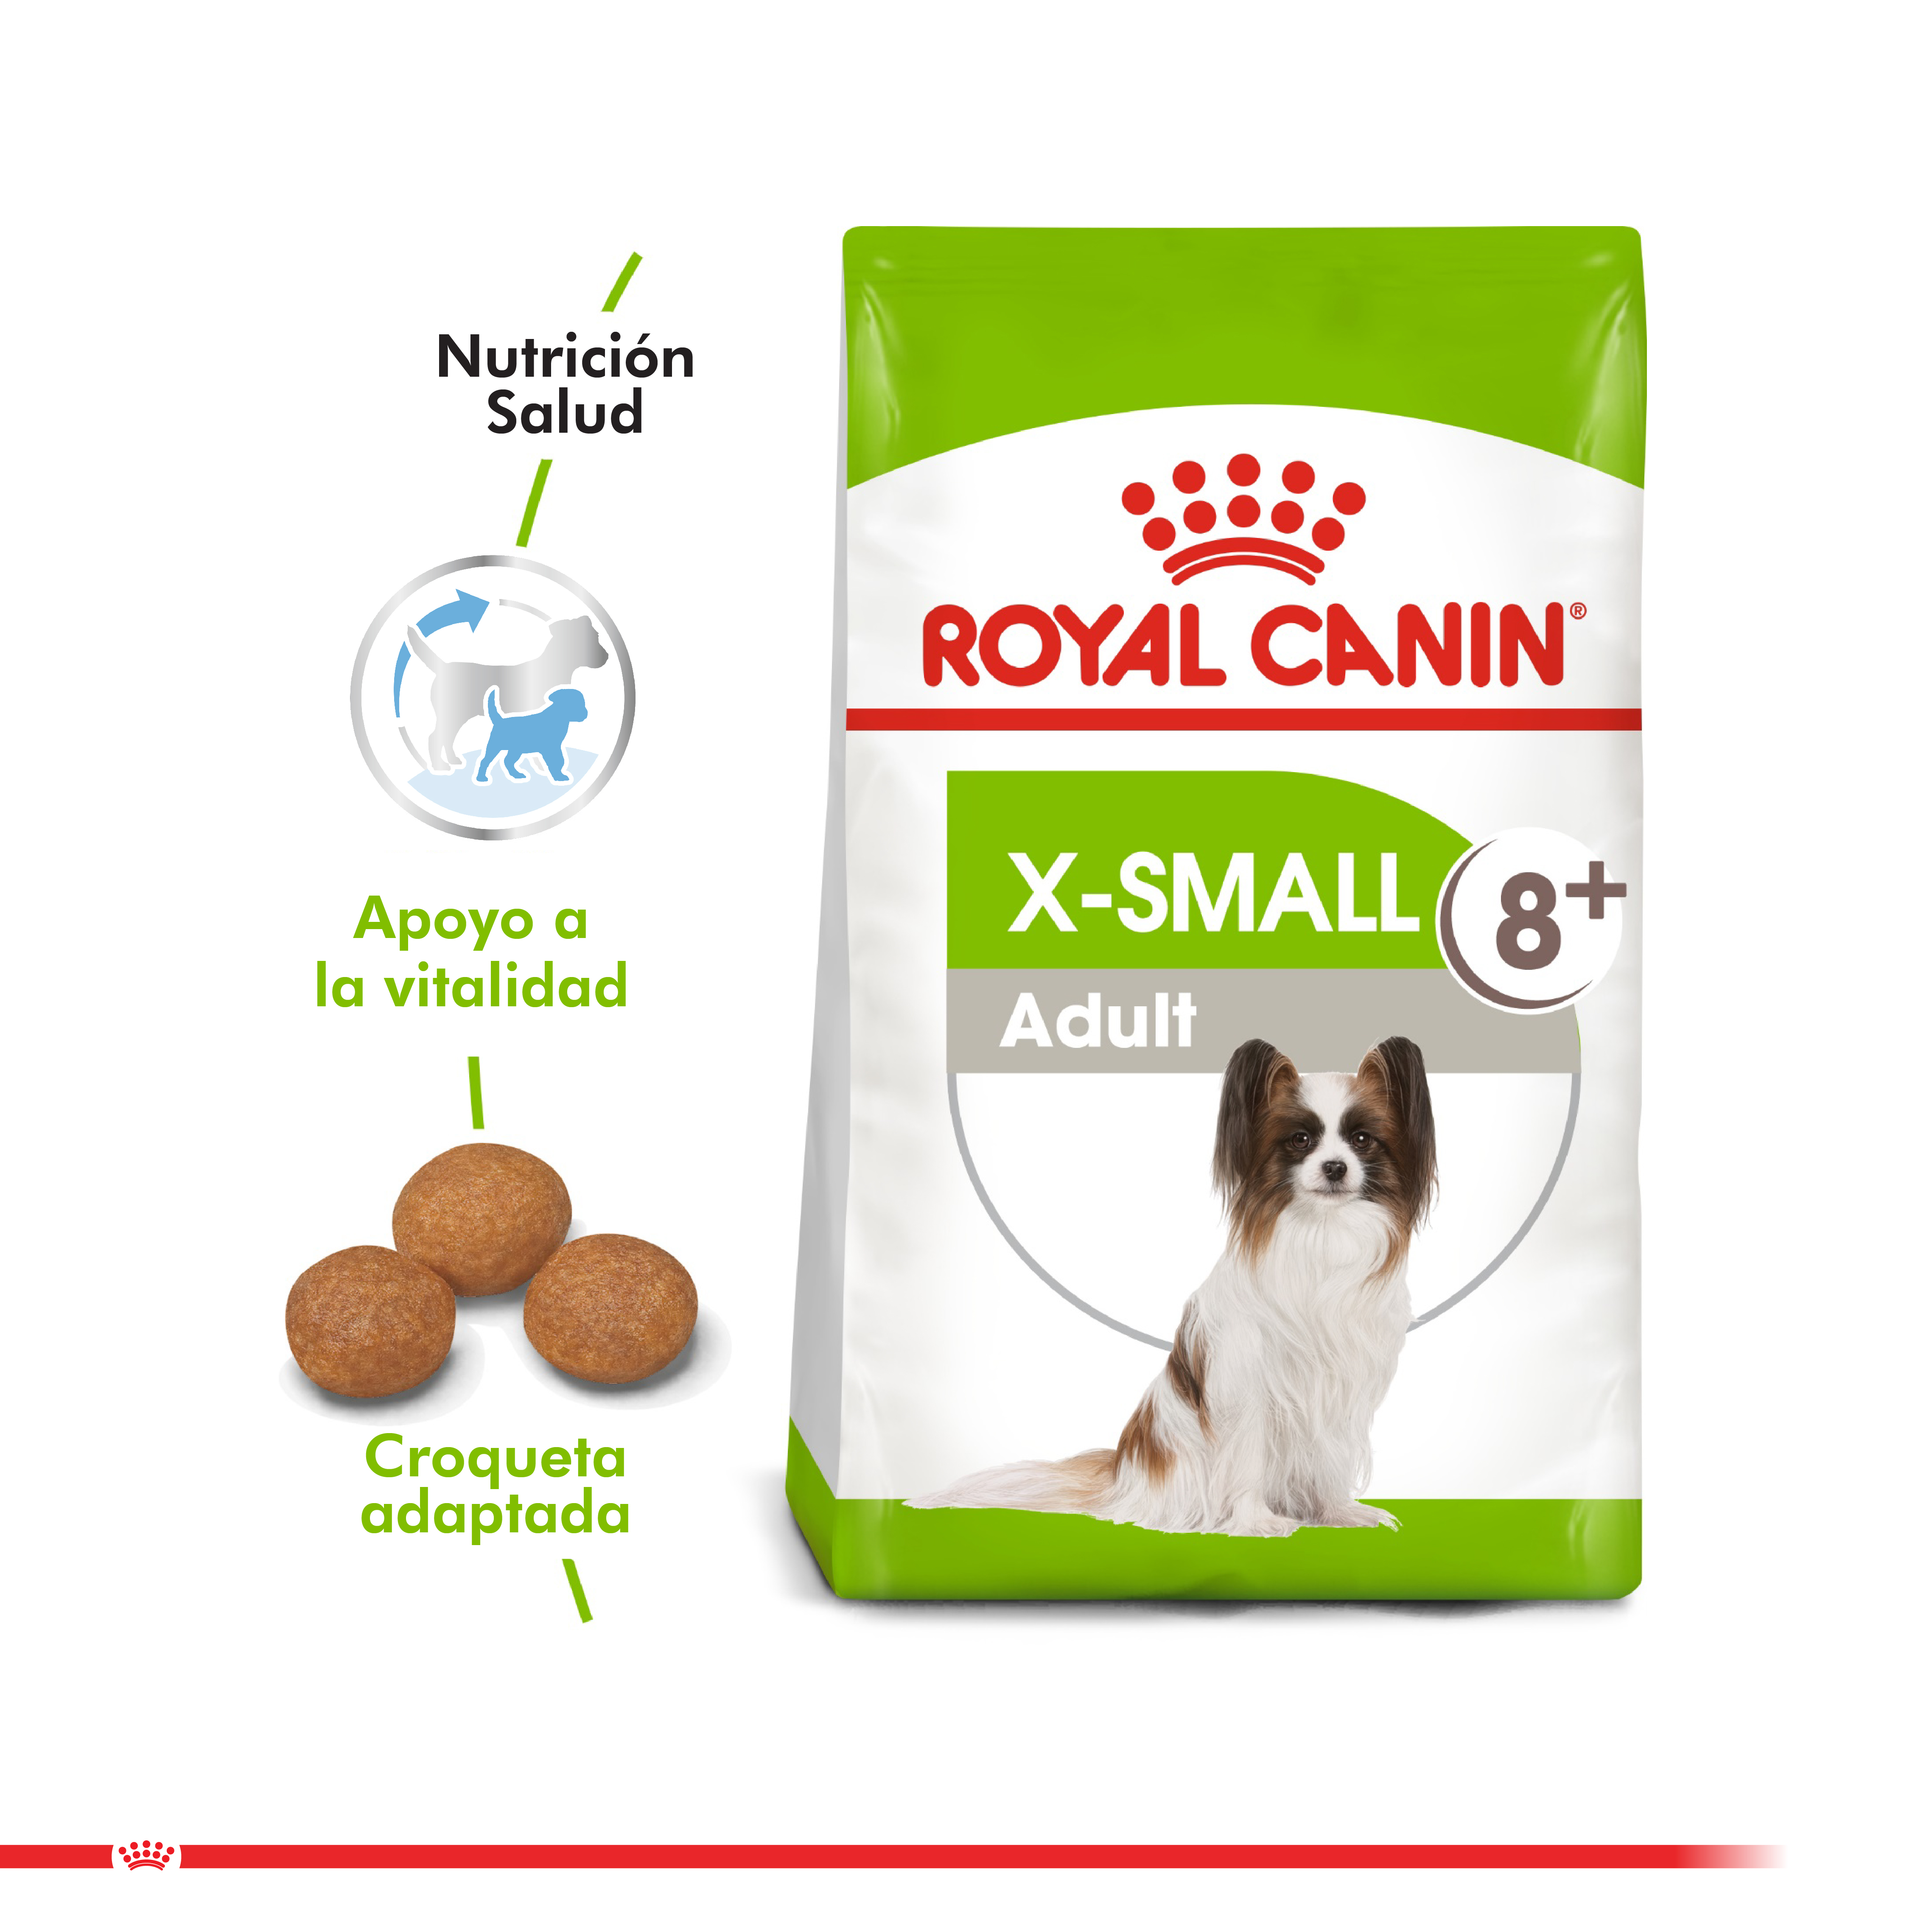 Royal canin alimento seco perro adulto x-Small adult 2,5 Kg | Bio Pet Shop  -Tienda de Mascotas